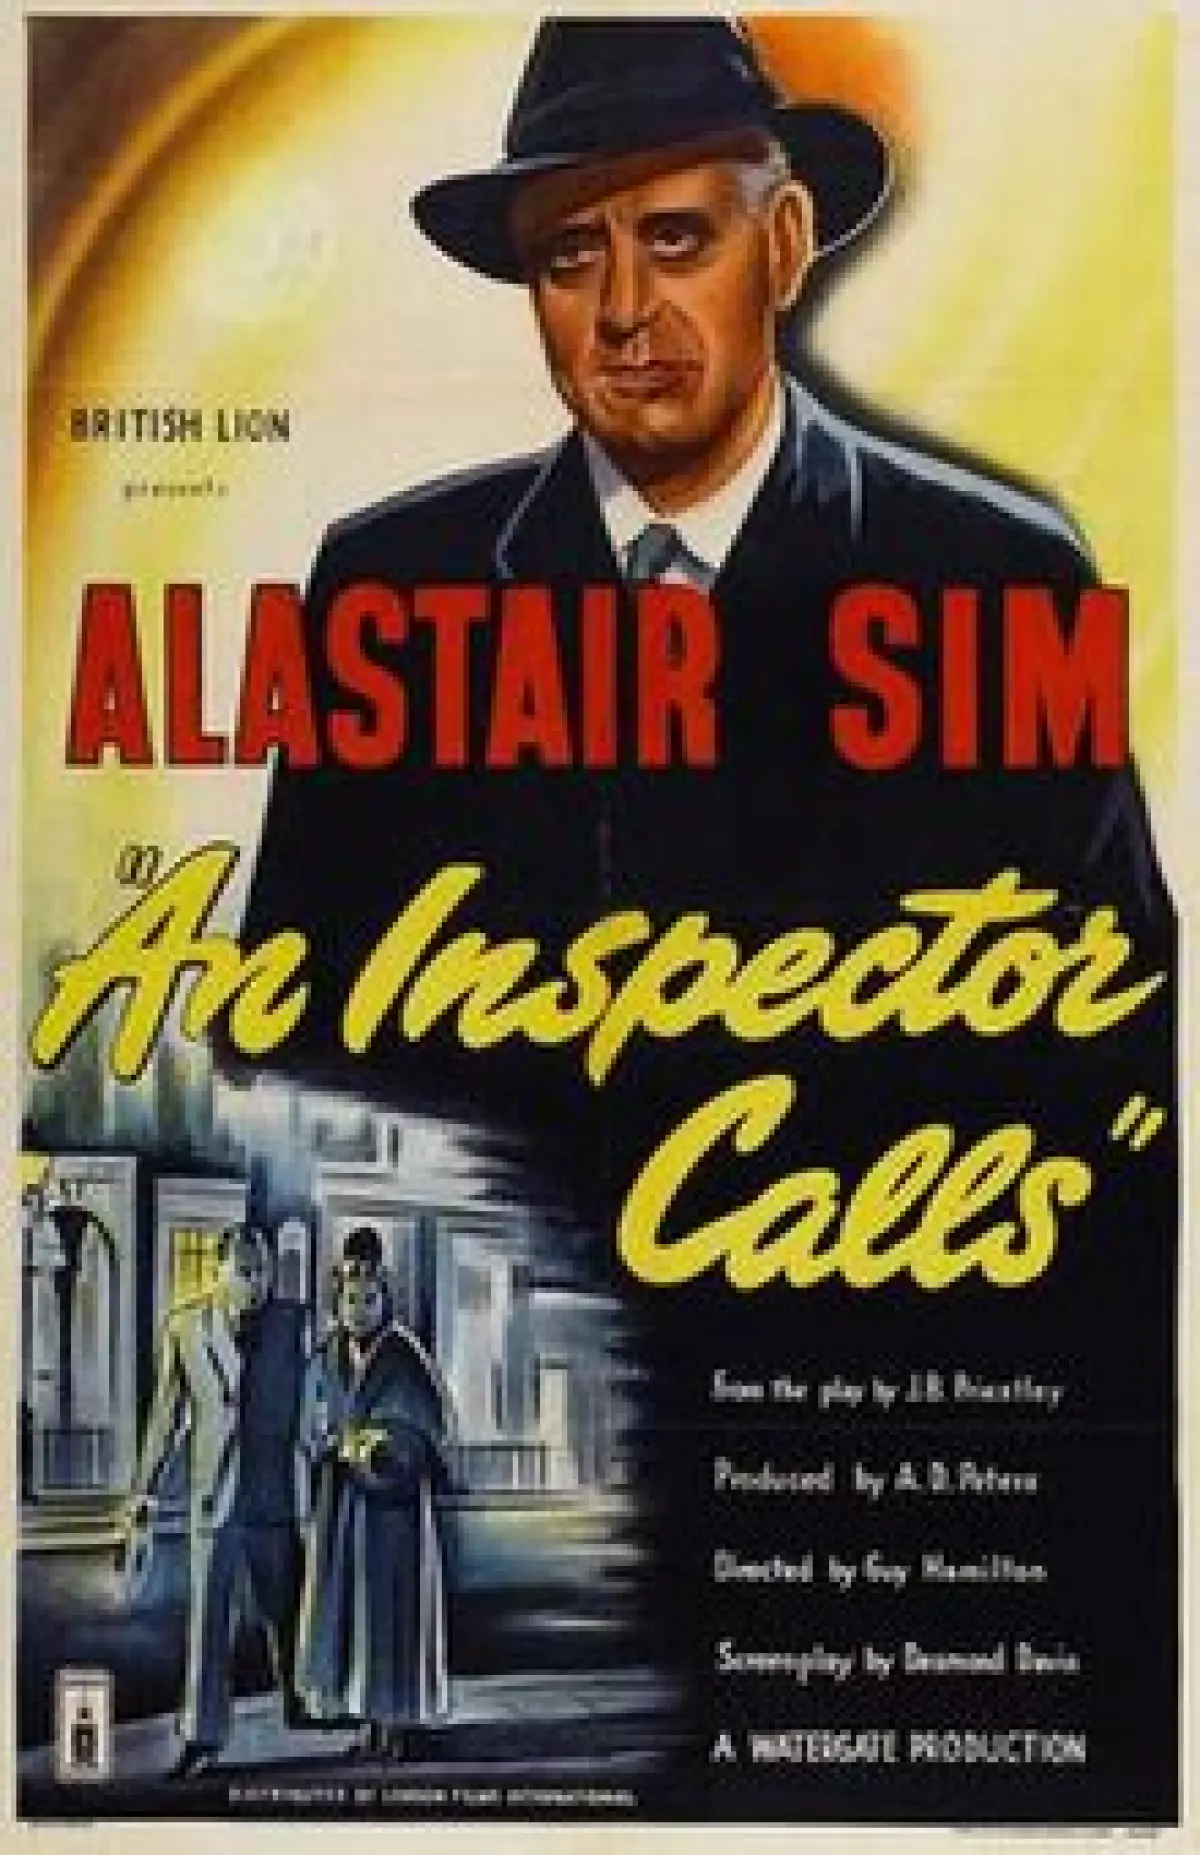 Cast of An Inspector Calls